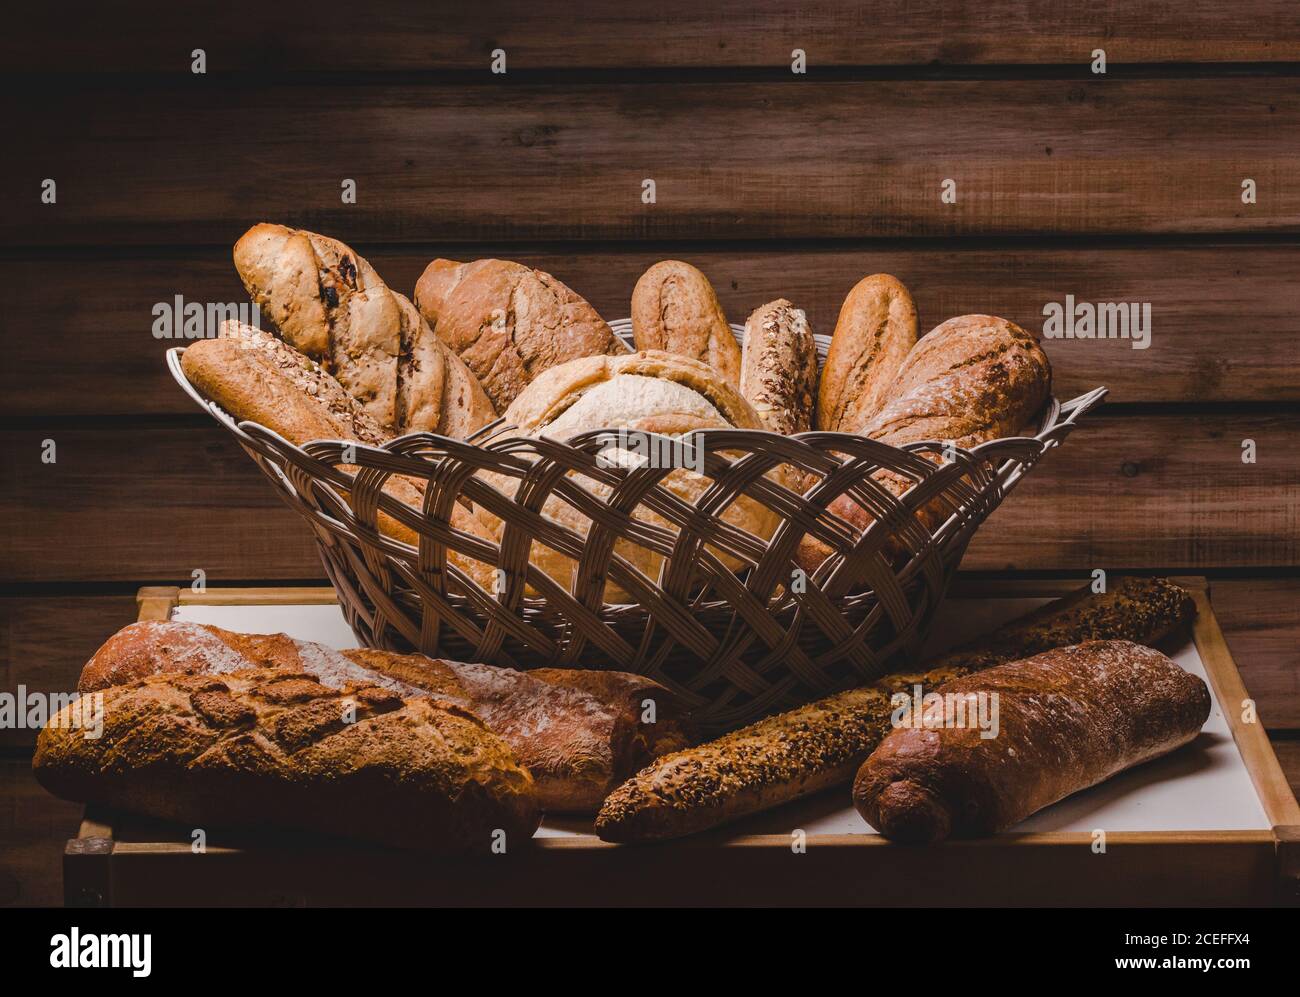 Magnifique arrangement rustique de panier avec pains et petits pains et baguettes sur fond de bois. Banque D'Images